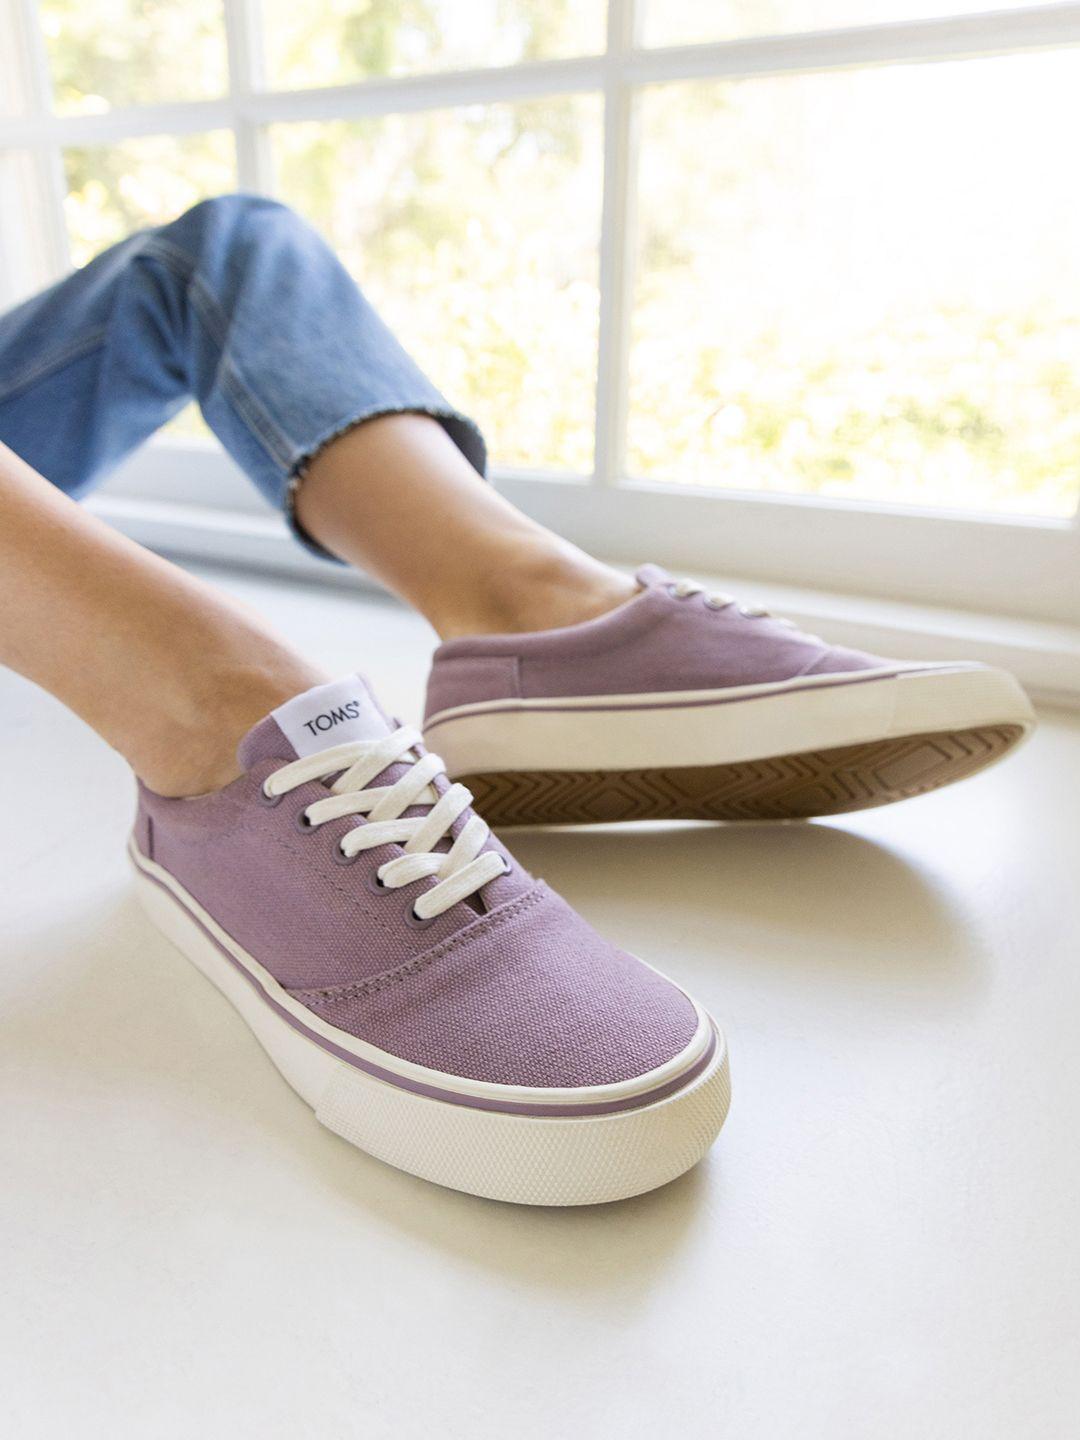 toms-women-purple-canvas-sneakers